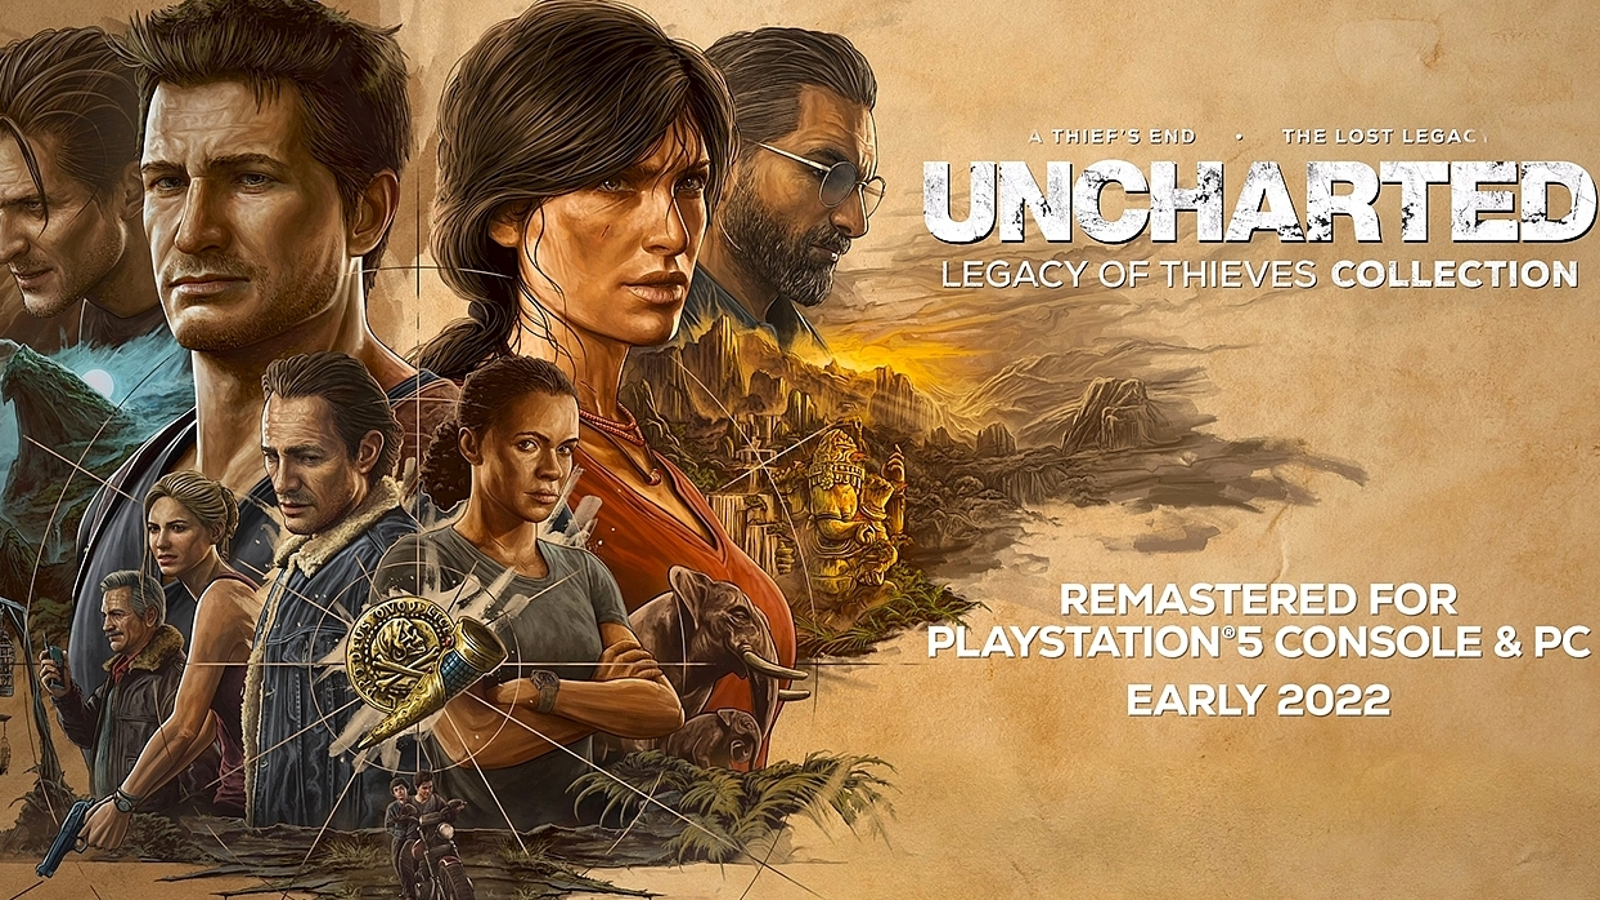 Livro do filme de Uncharted terá versão em áudio com narração de